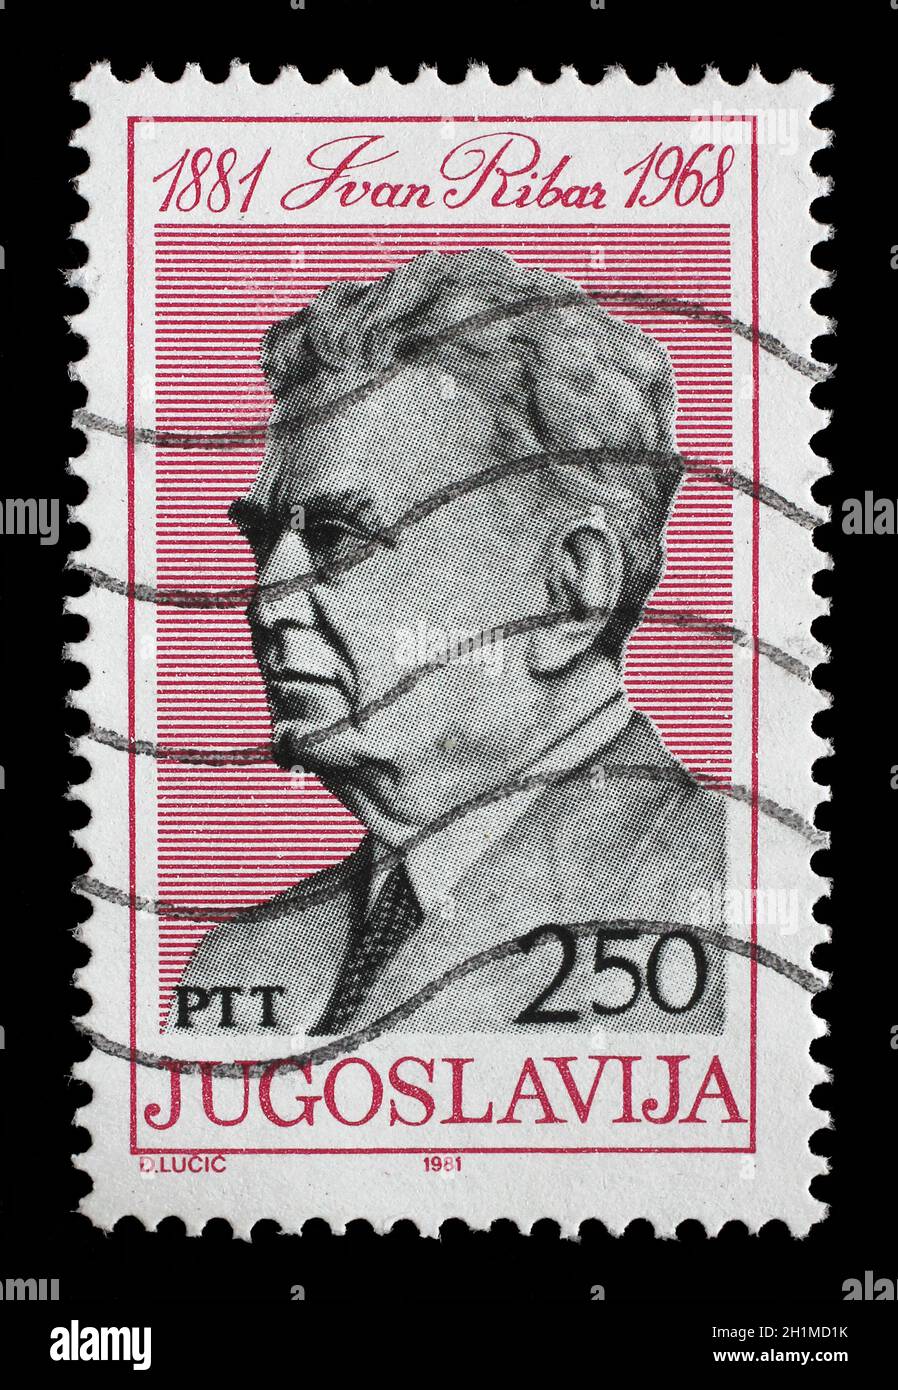 Timbre imprimé en Yougoslavie montre Ivan Ribar (21 janvier 1881 - 11 juin 1968) politicien yougoslave et soldat d'origine croate, vers 1981 Banque D'Images